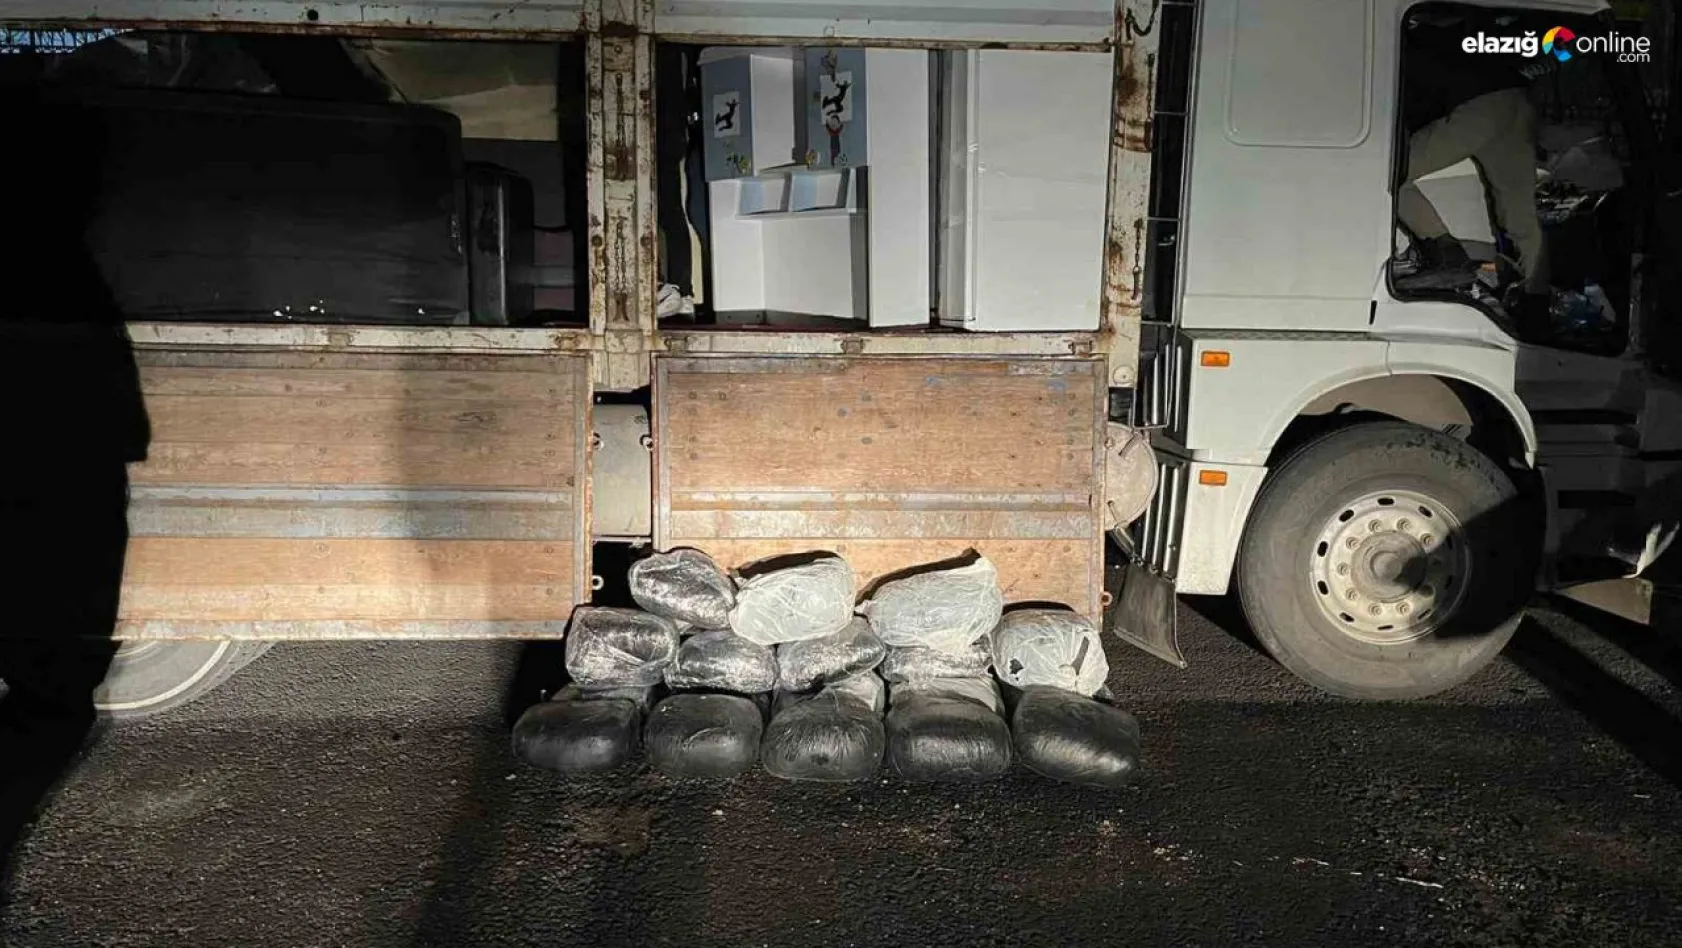 Nakliye yapılan kamyonun içindeki buzdolabından 81 kilo skunk ele geçirildi: 4 kişi tutuklandı